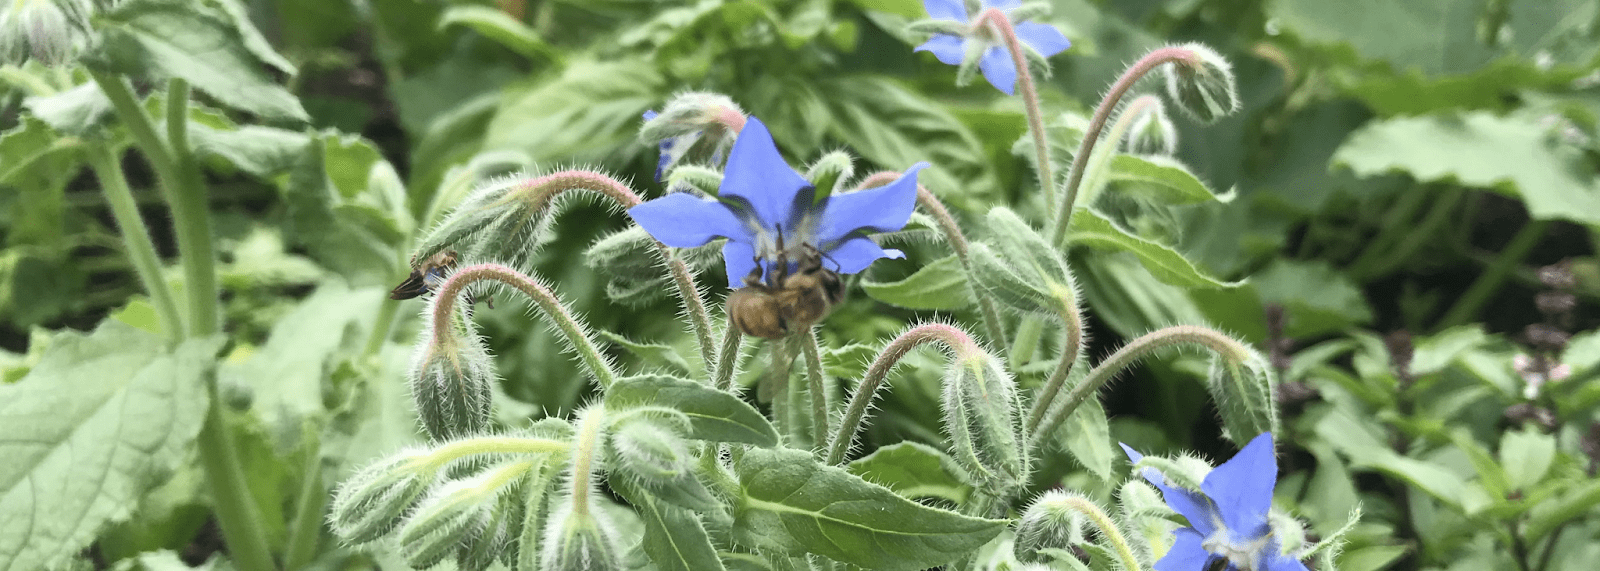 Gambar lebar header bunga periwinkle, diperkecil. Lebah madu hampir tidak terlihat.